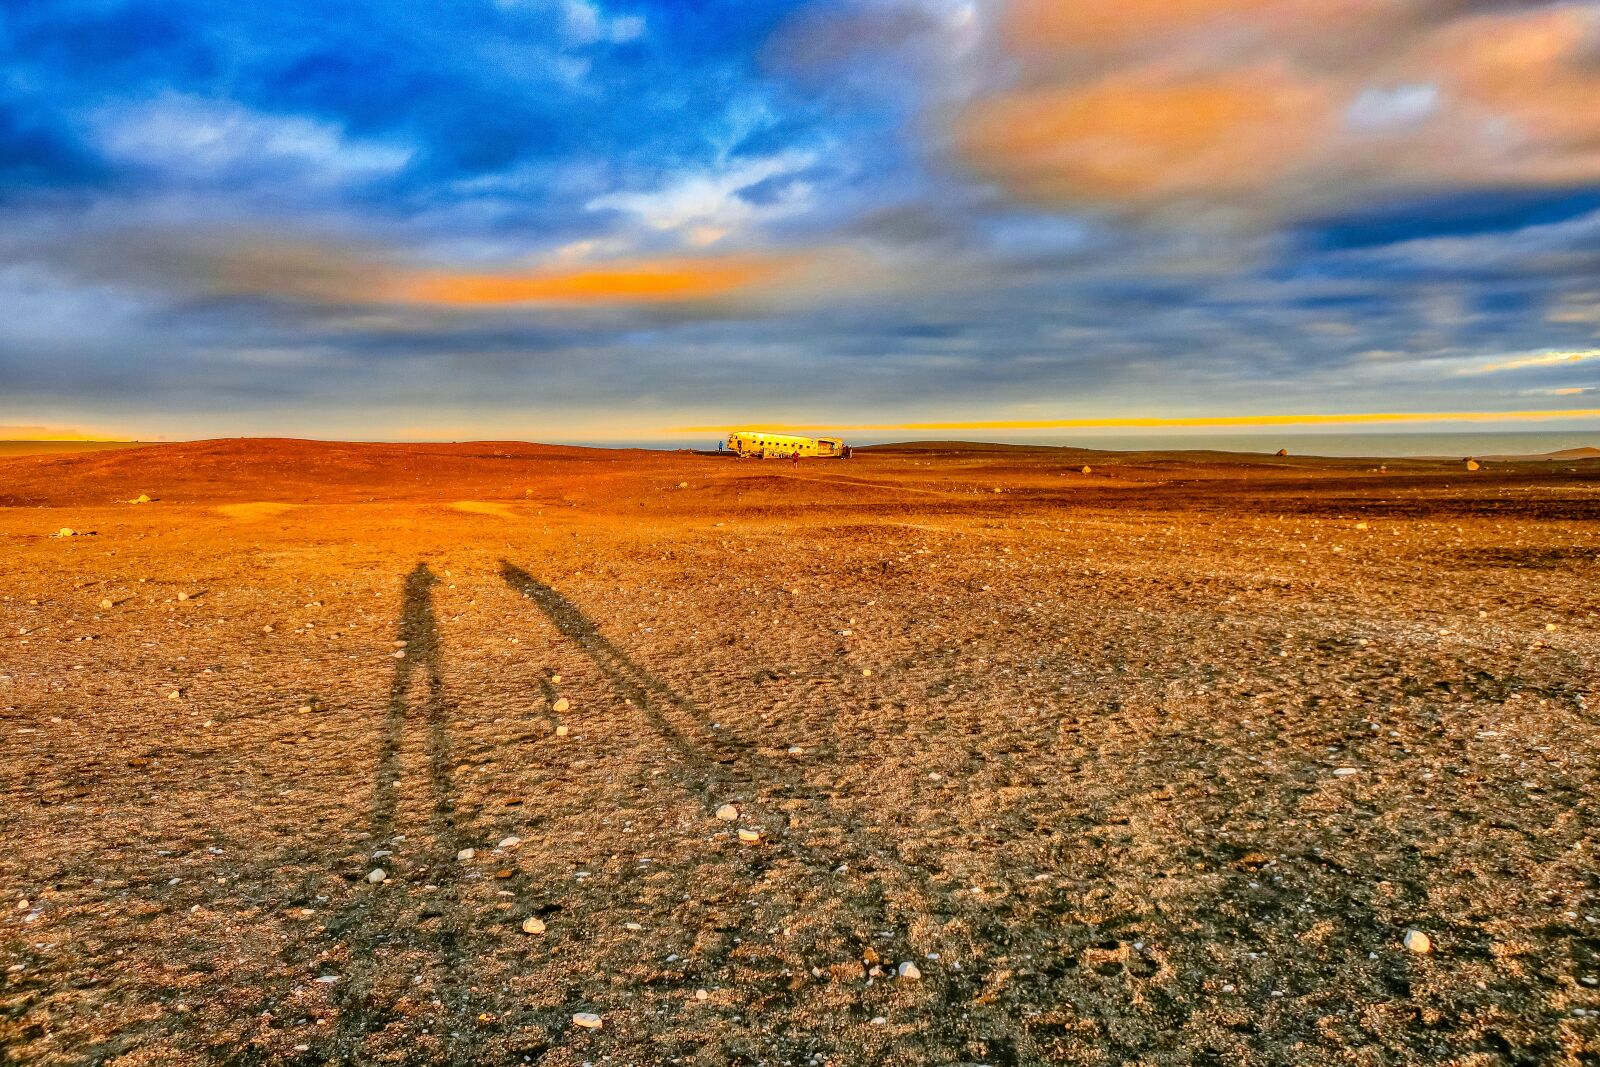 Canon PowerShot G9 X sample photo. Iceland, sunset, landscape photography